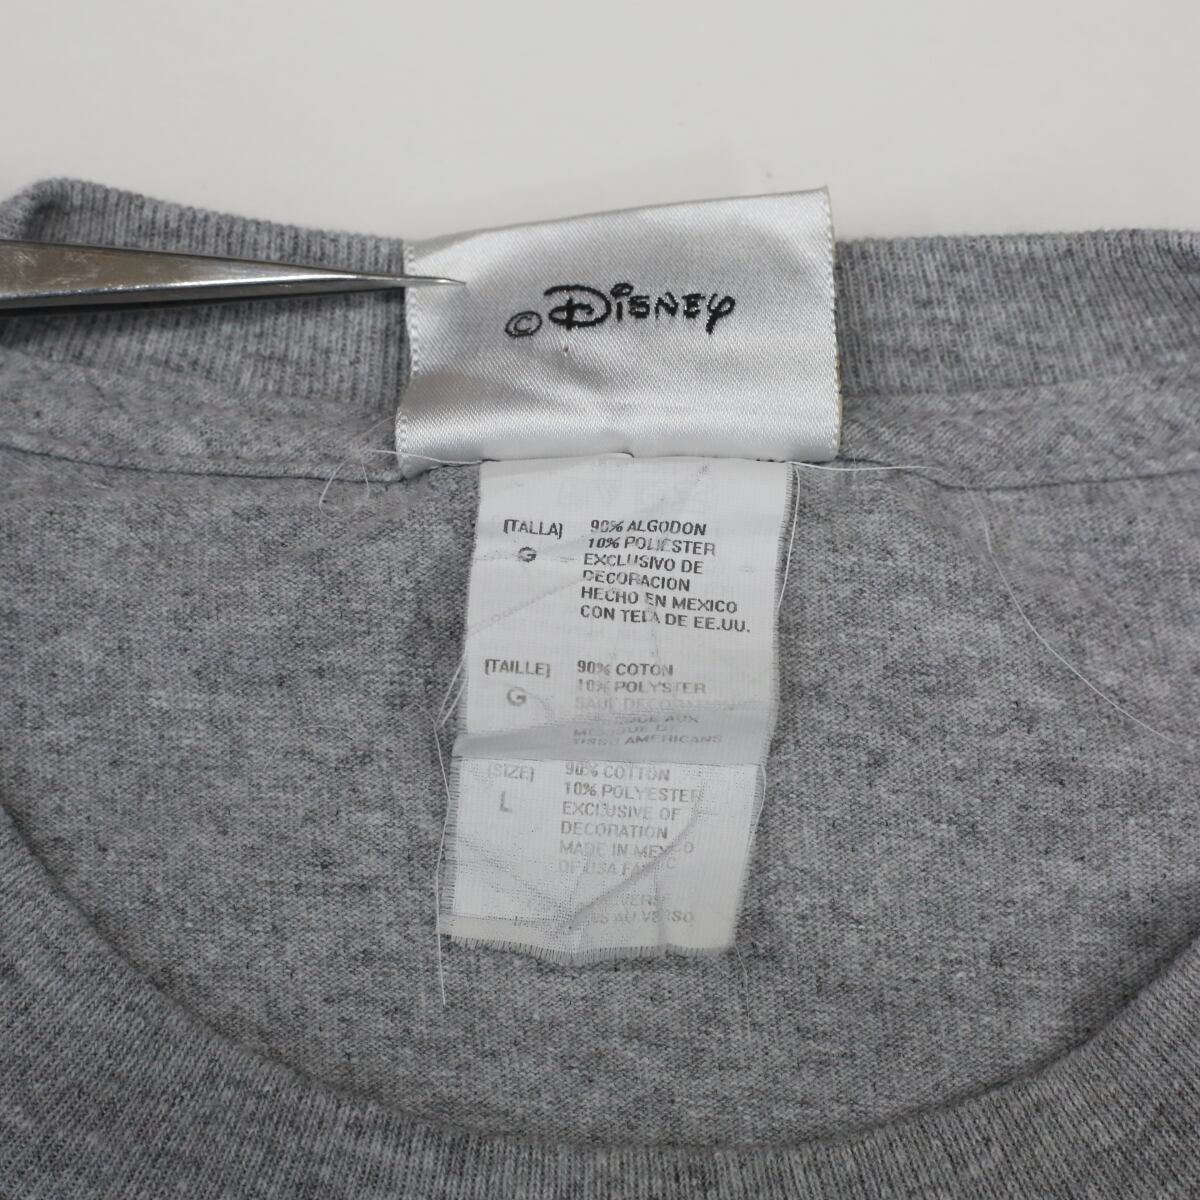 ウォルトディズニー 2006年製 半袖 Tシャツ ミッキー ドナルド グーフィー プルート グレー L